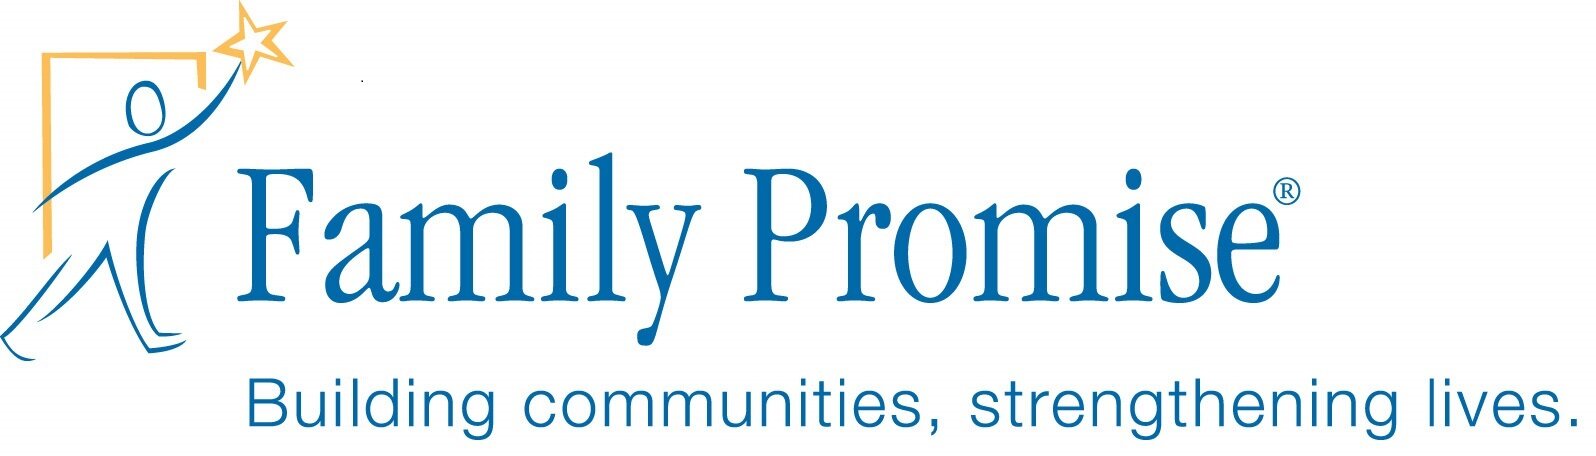 Family_Promise_logo.jpg